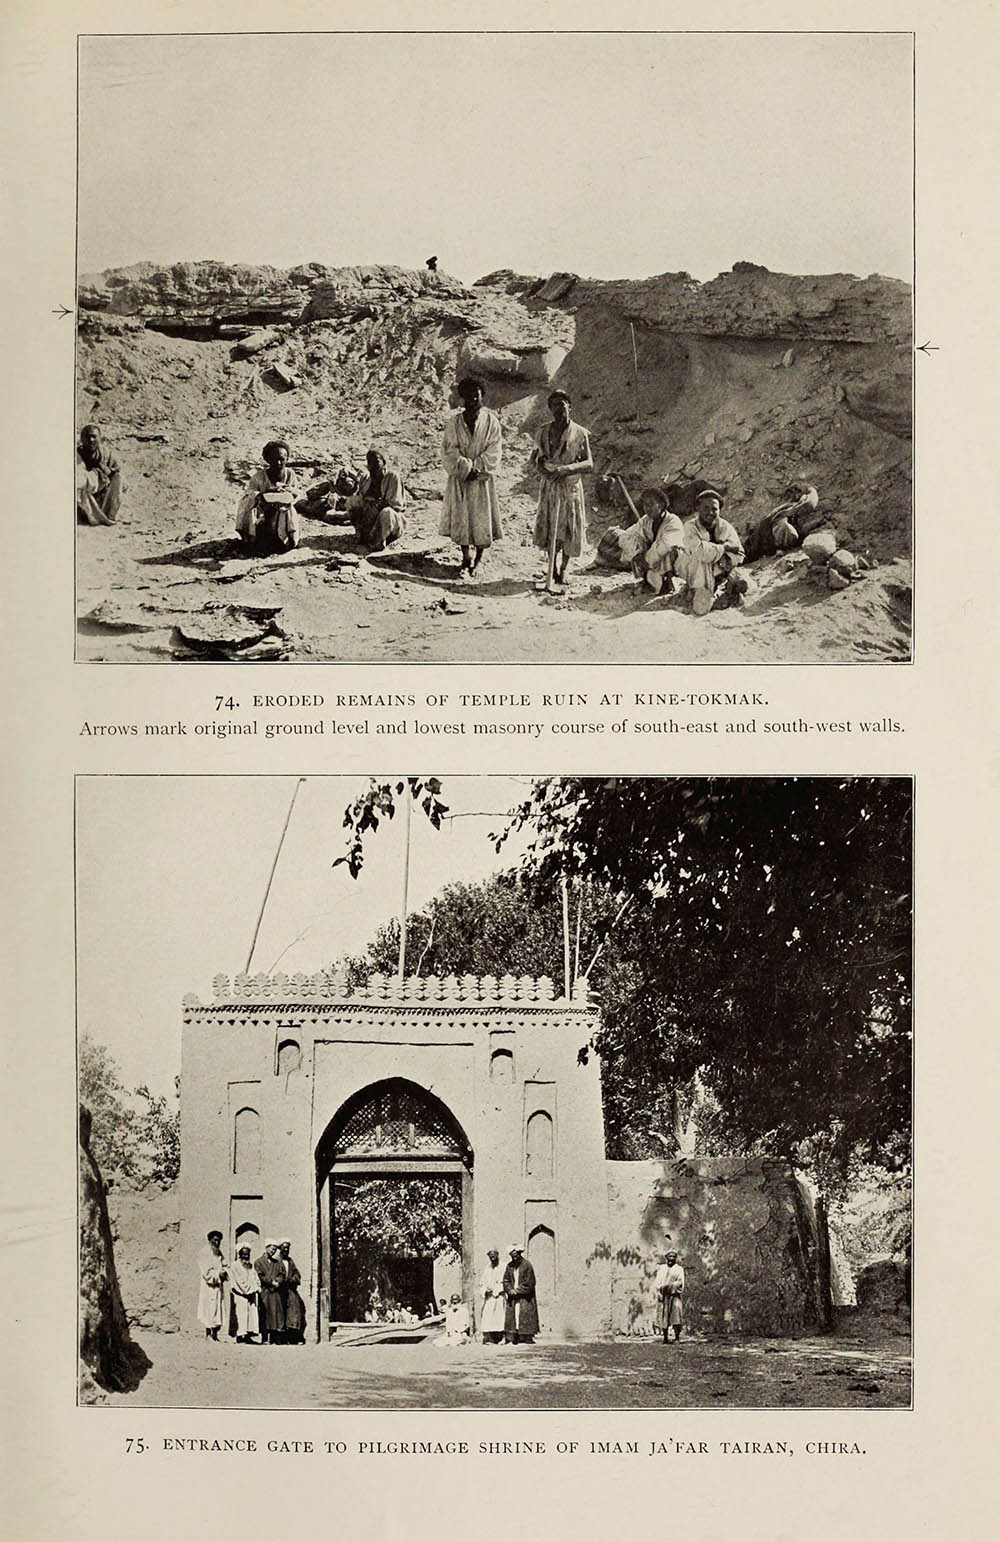 中国老照片影集，沙漠中的遗址1912年斯坦因拍摄